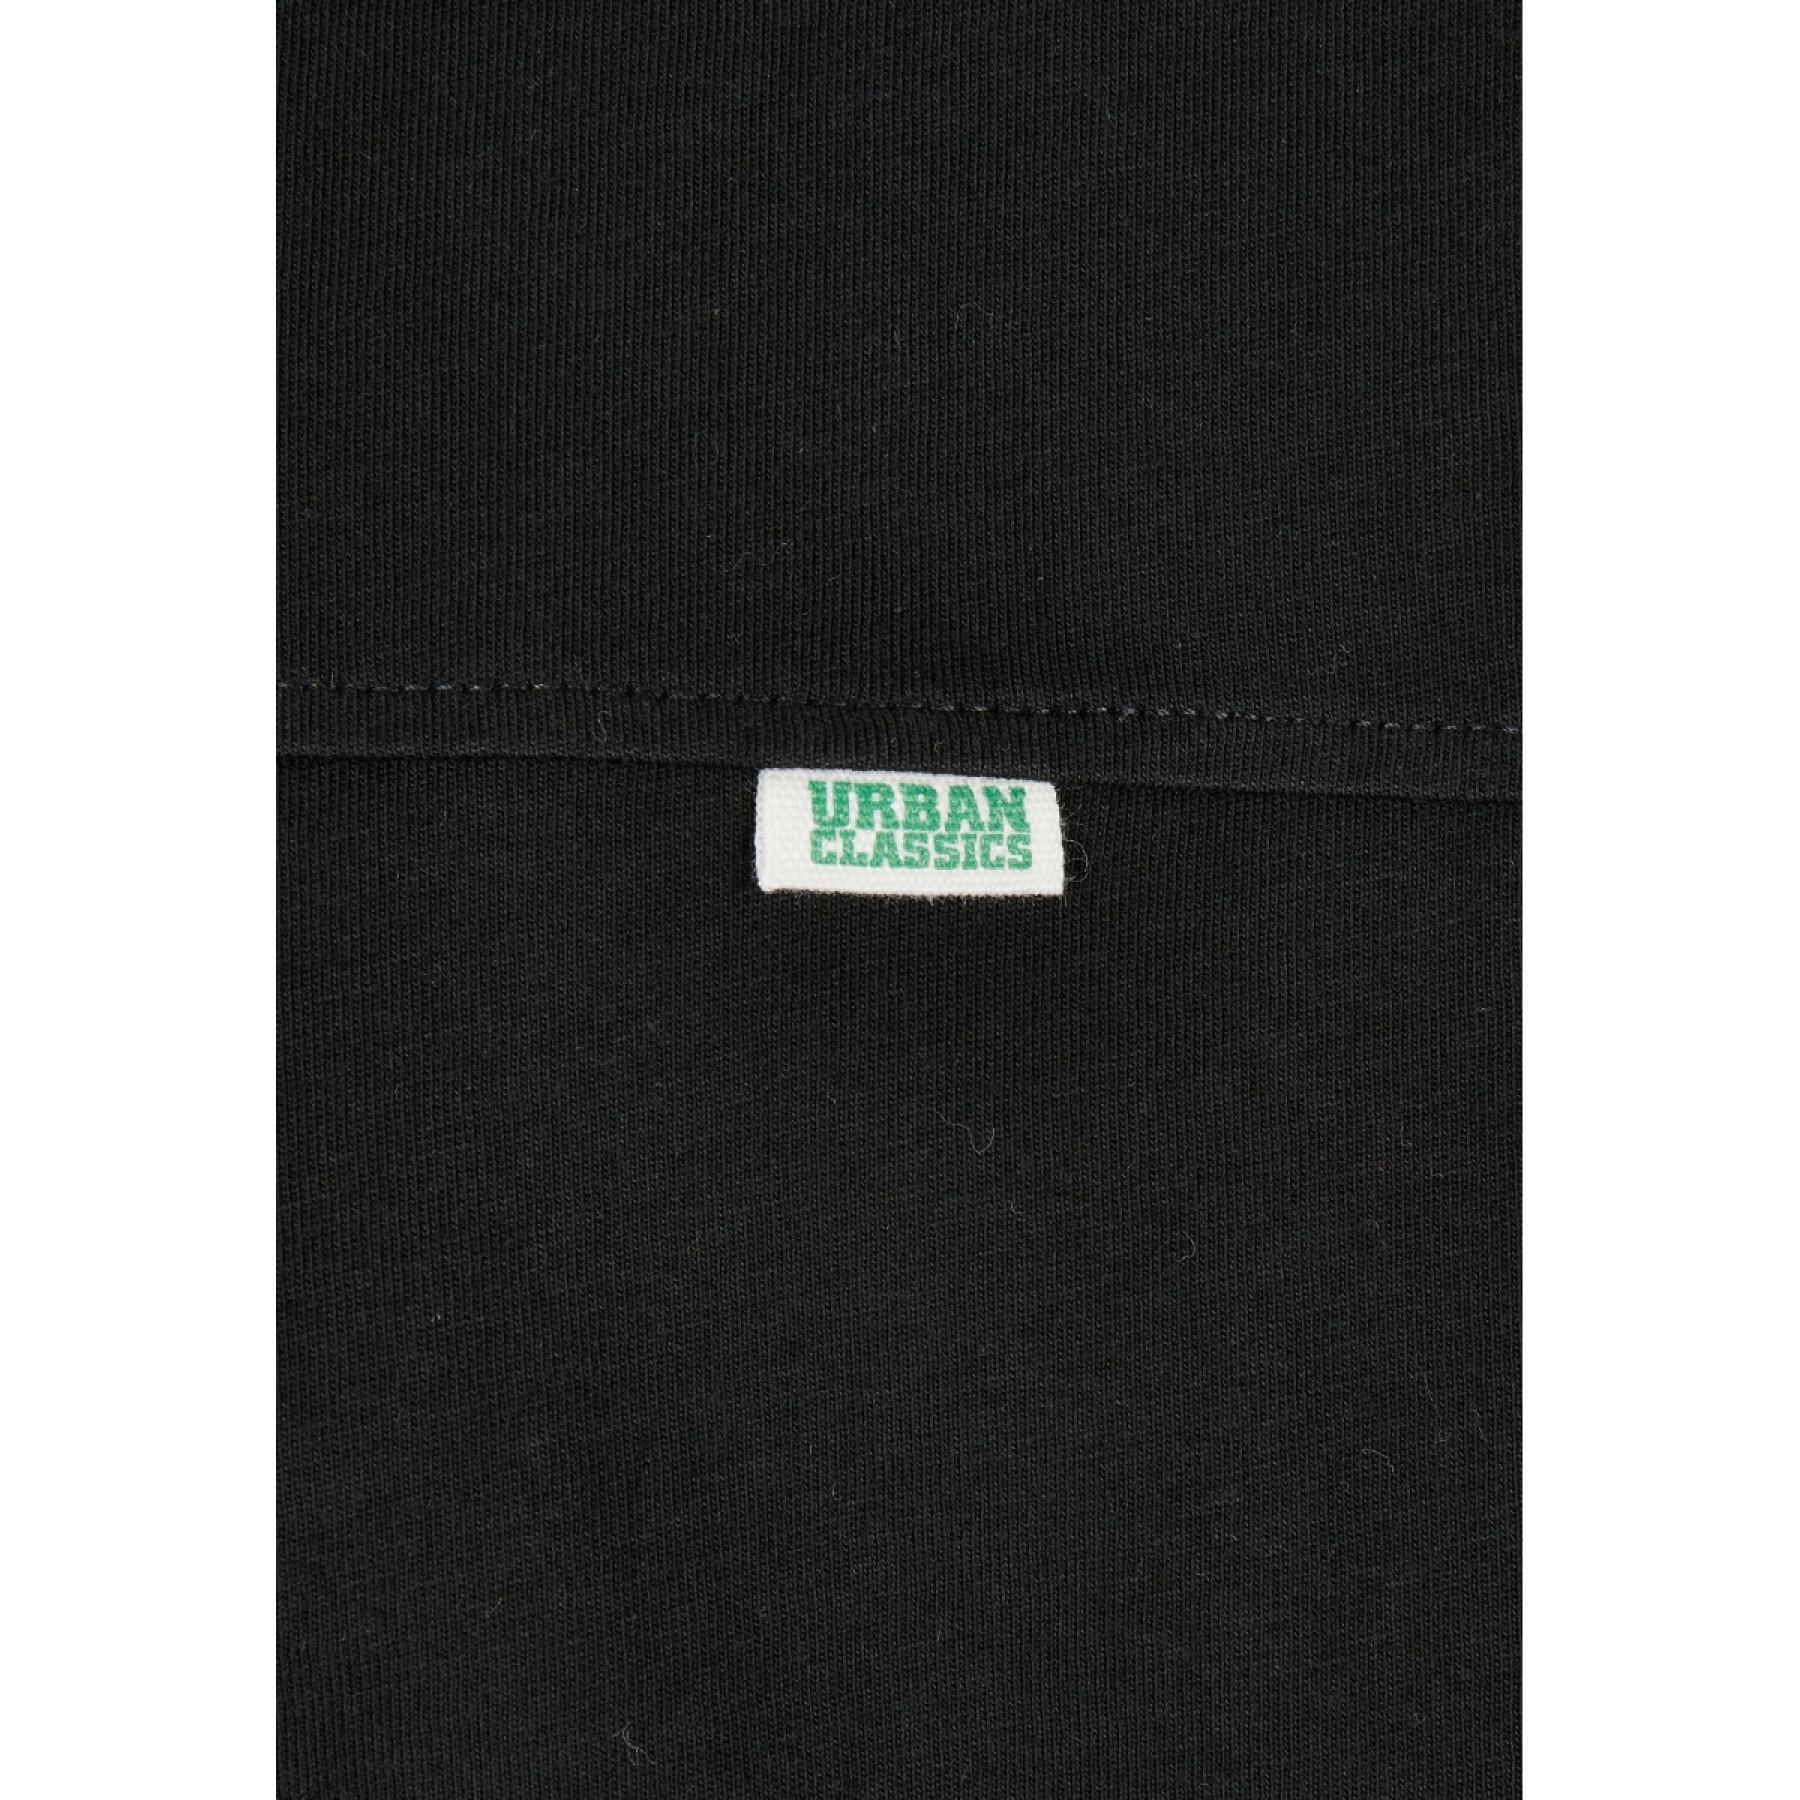 Maglietta a manica lunga Urban Classics coton organique oversized-taglie forti